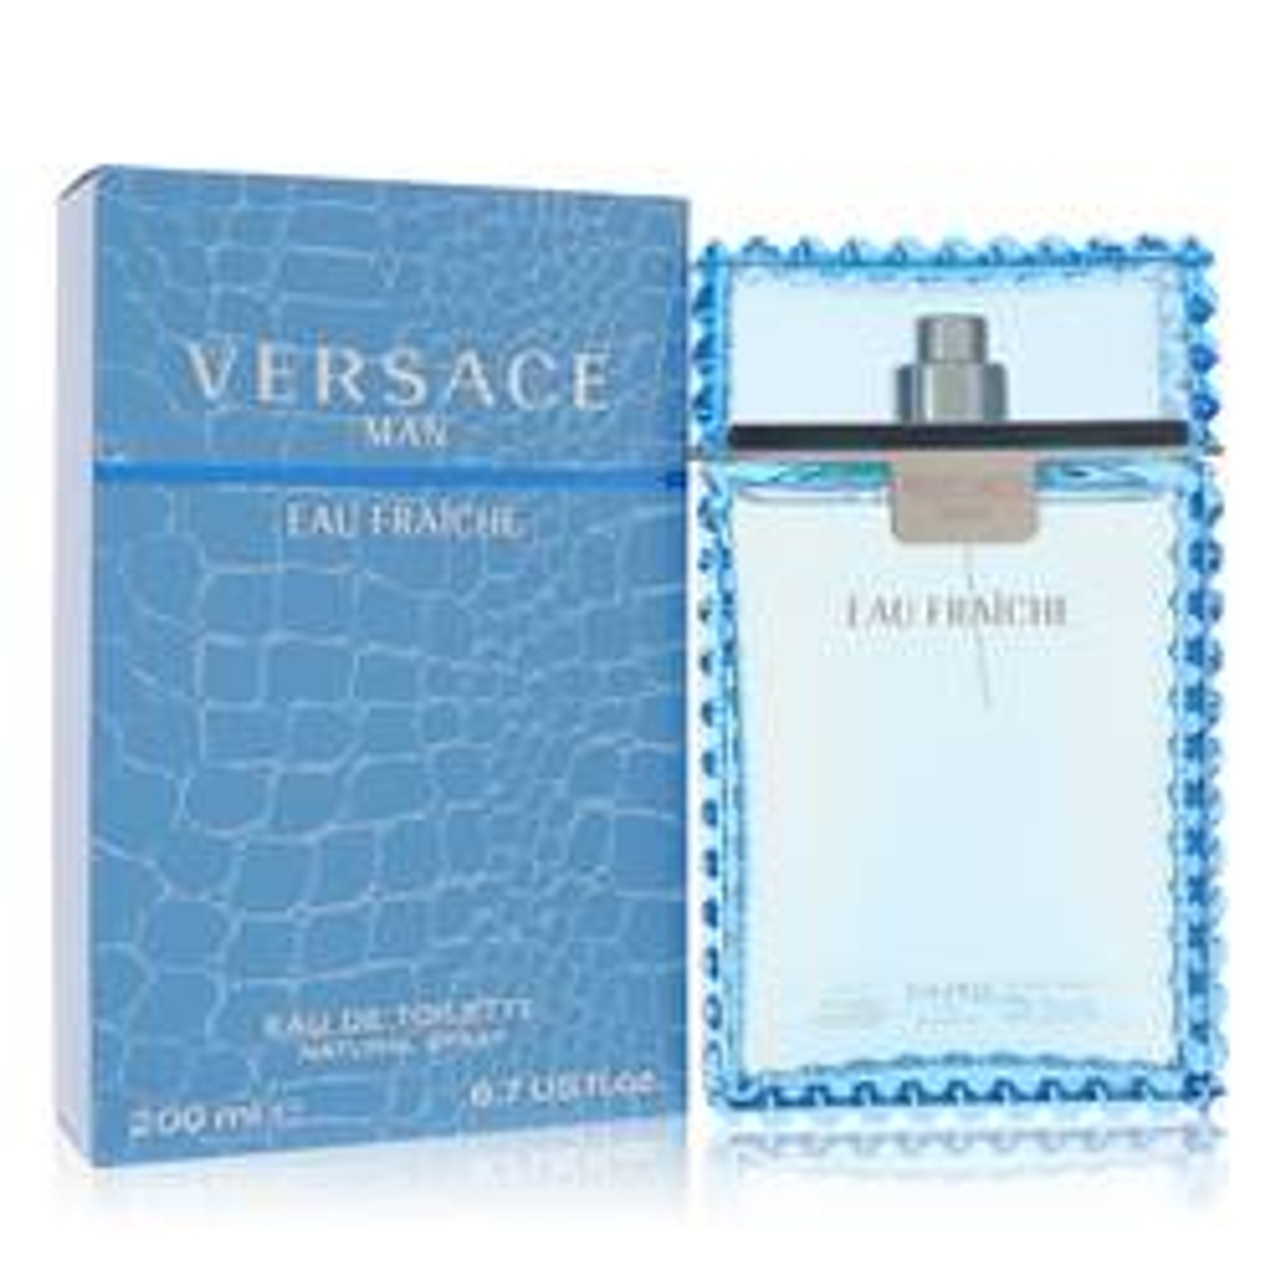 Versace Man Cologne By Versace Eau Fraiche Eau De Toilette Spray (Blue) 6.7 oz for Men - *Pre-Order